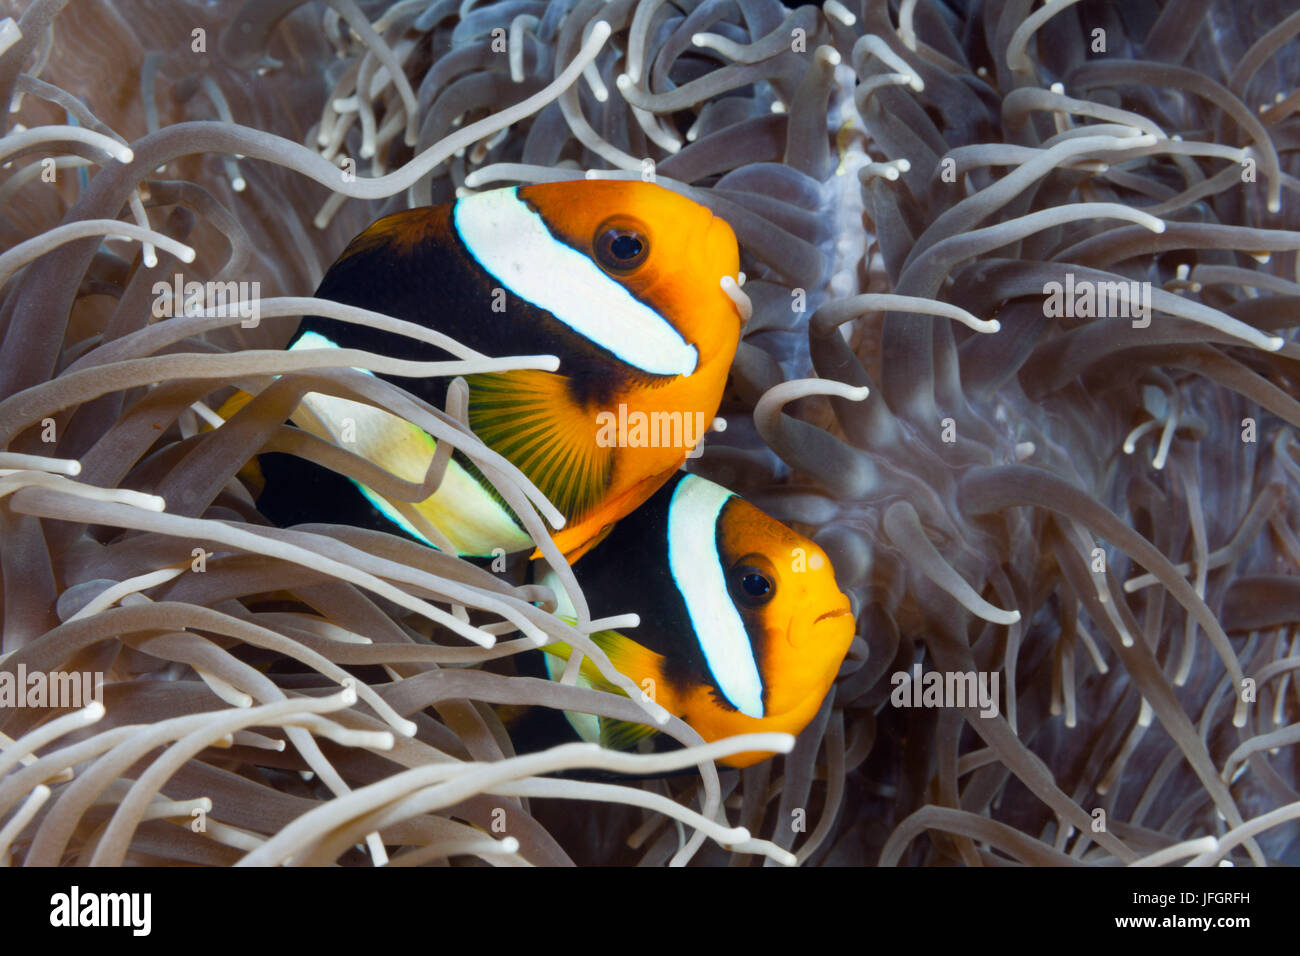 Clarks Couple poisson de l'anémone, Amphiprion clarkii, Floride, Iles Salomon Banque D'Images